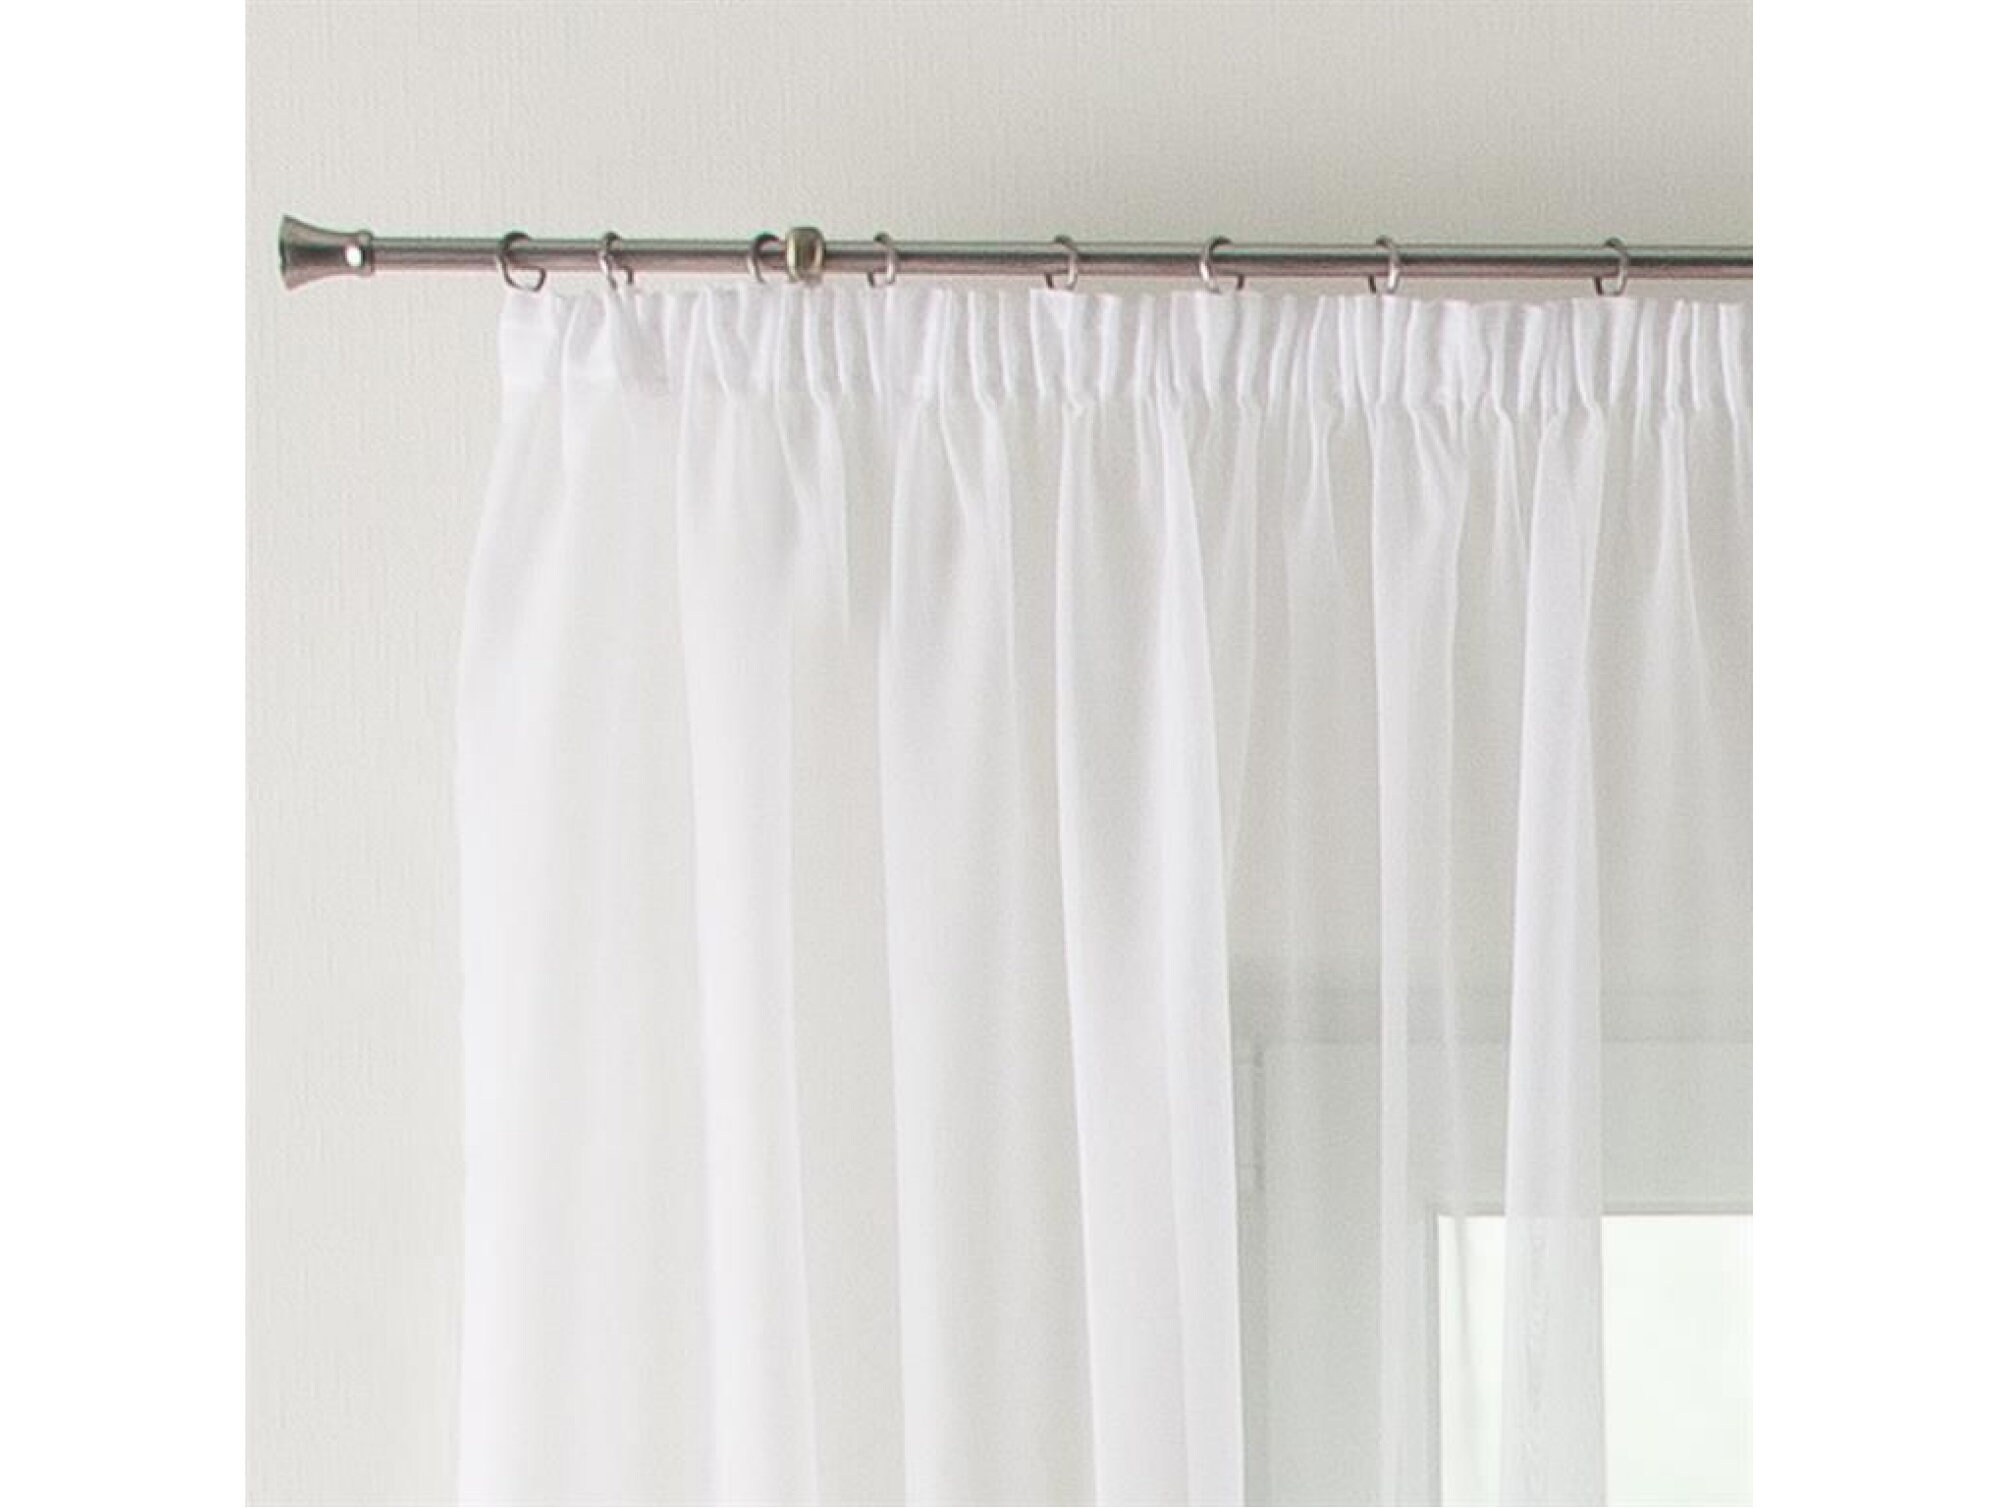 Vorhang Voile mit transparent luftig Gardine Flächenvorhang und Kräuselband Fenstervorhang Ecru Faltenband Weiß